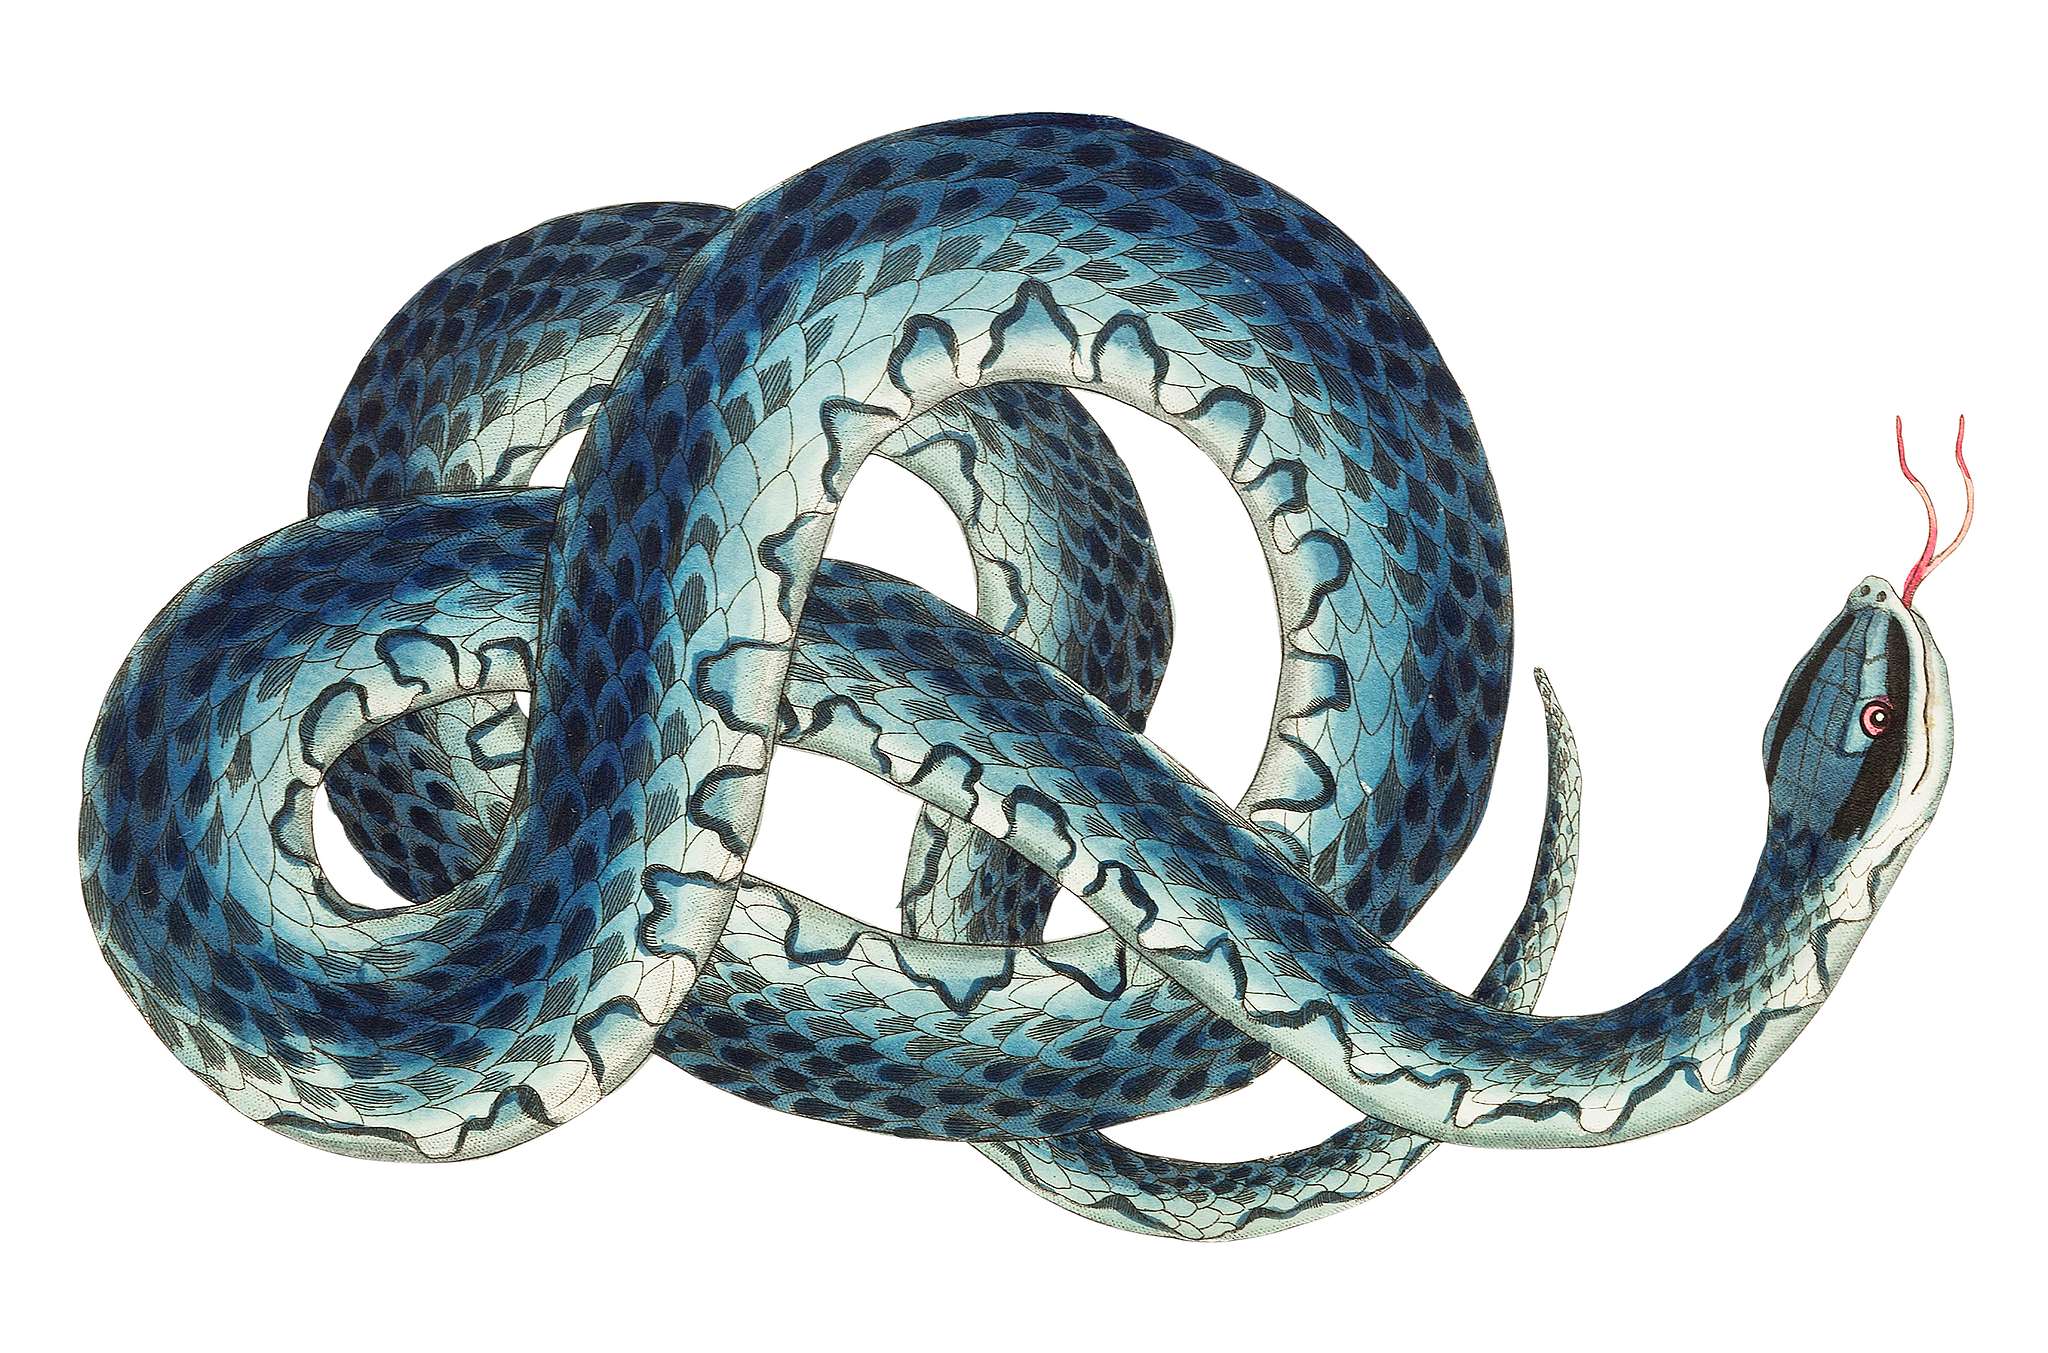 Fasciated snake  or Blue snake  or wampum snake  illustration  